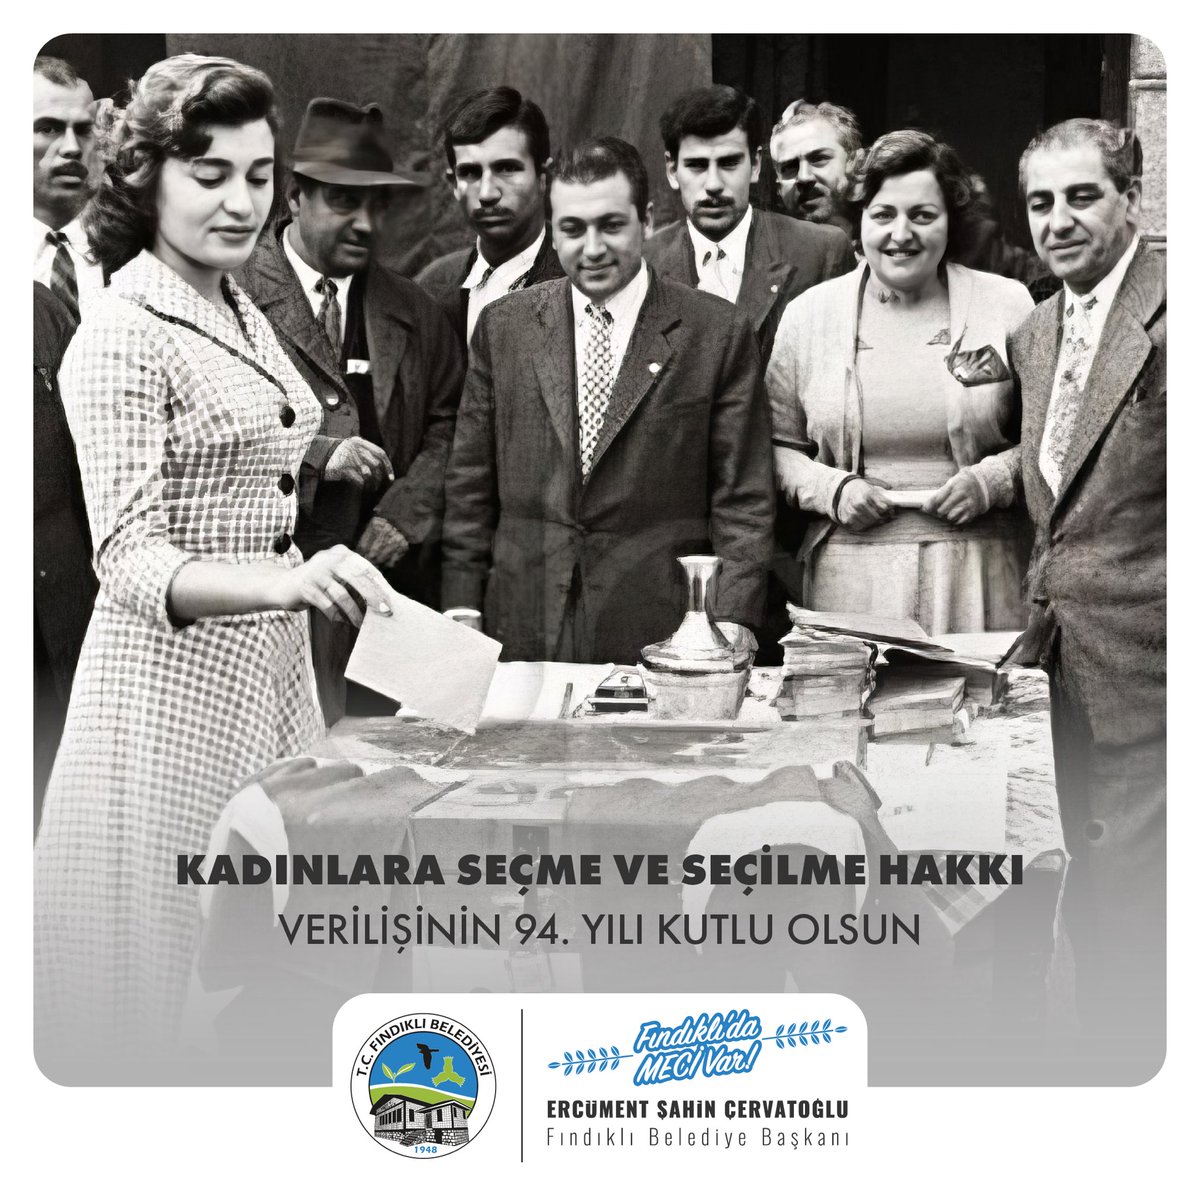 Gazi Mustafa Kemal Atatürk ilk kez 94 yıl önce bugün Türk kadınına seçme ve seçilme hakkını teslim etti.